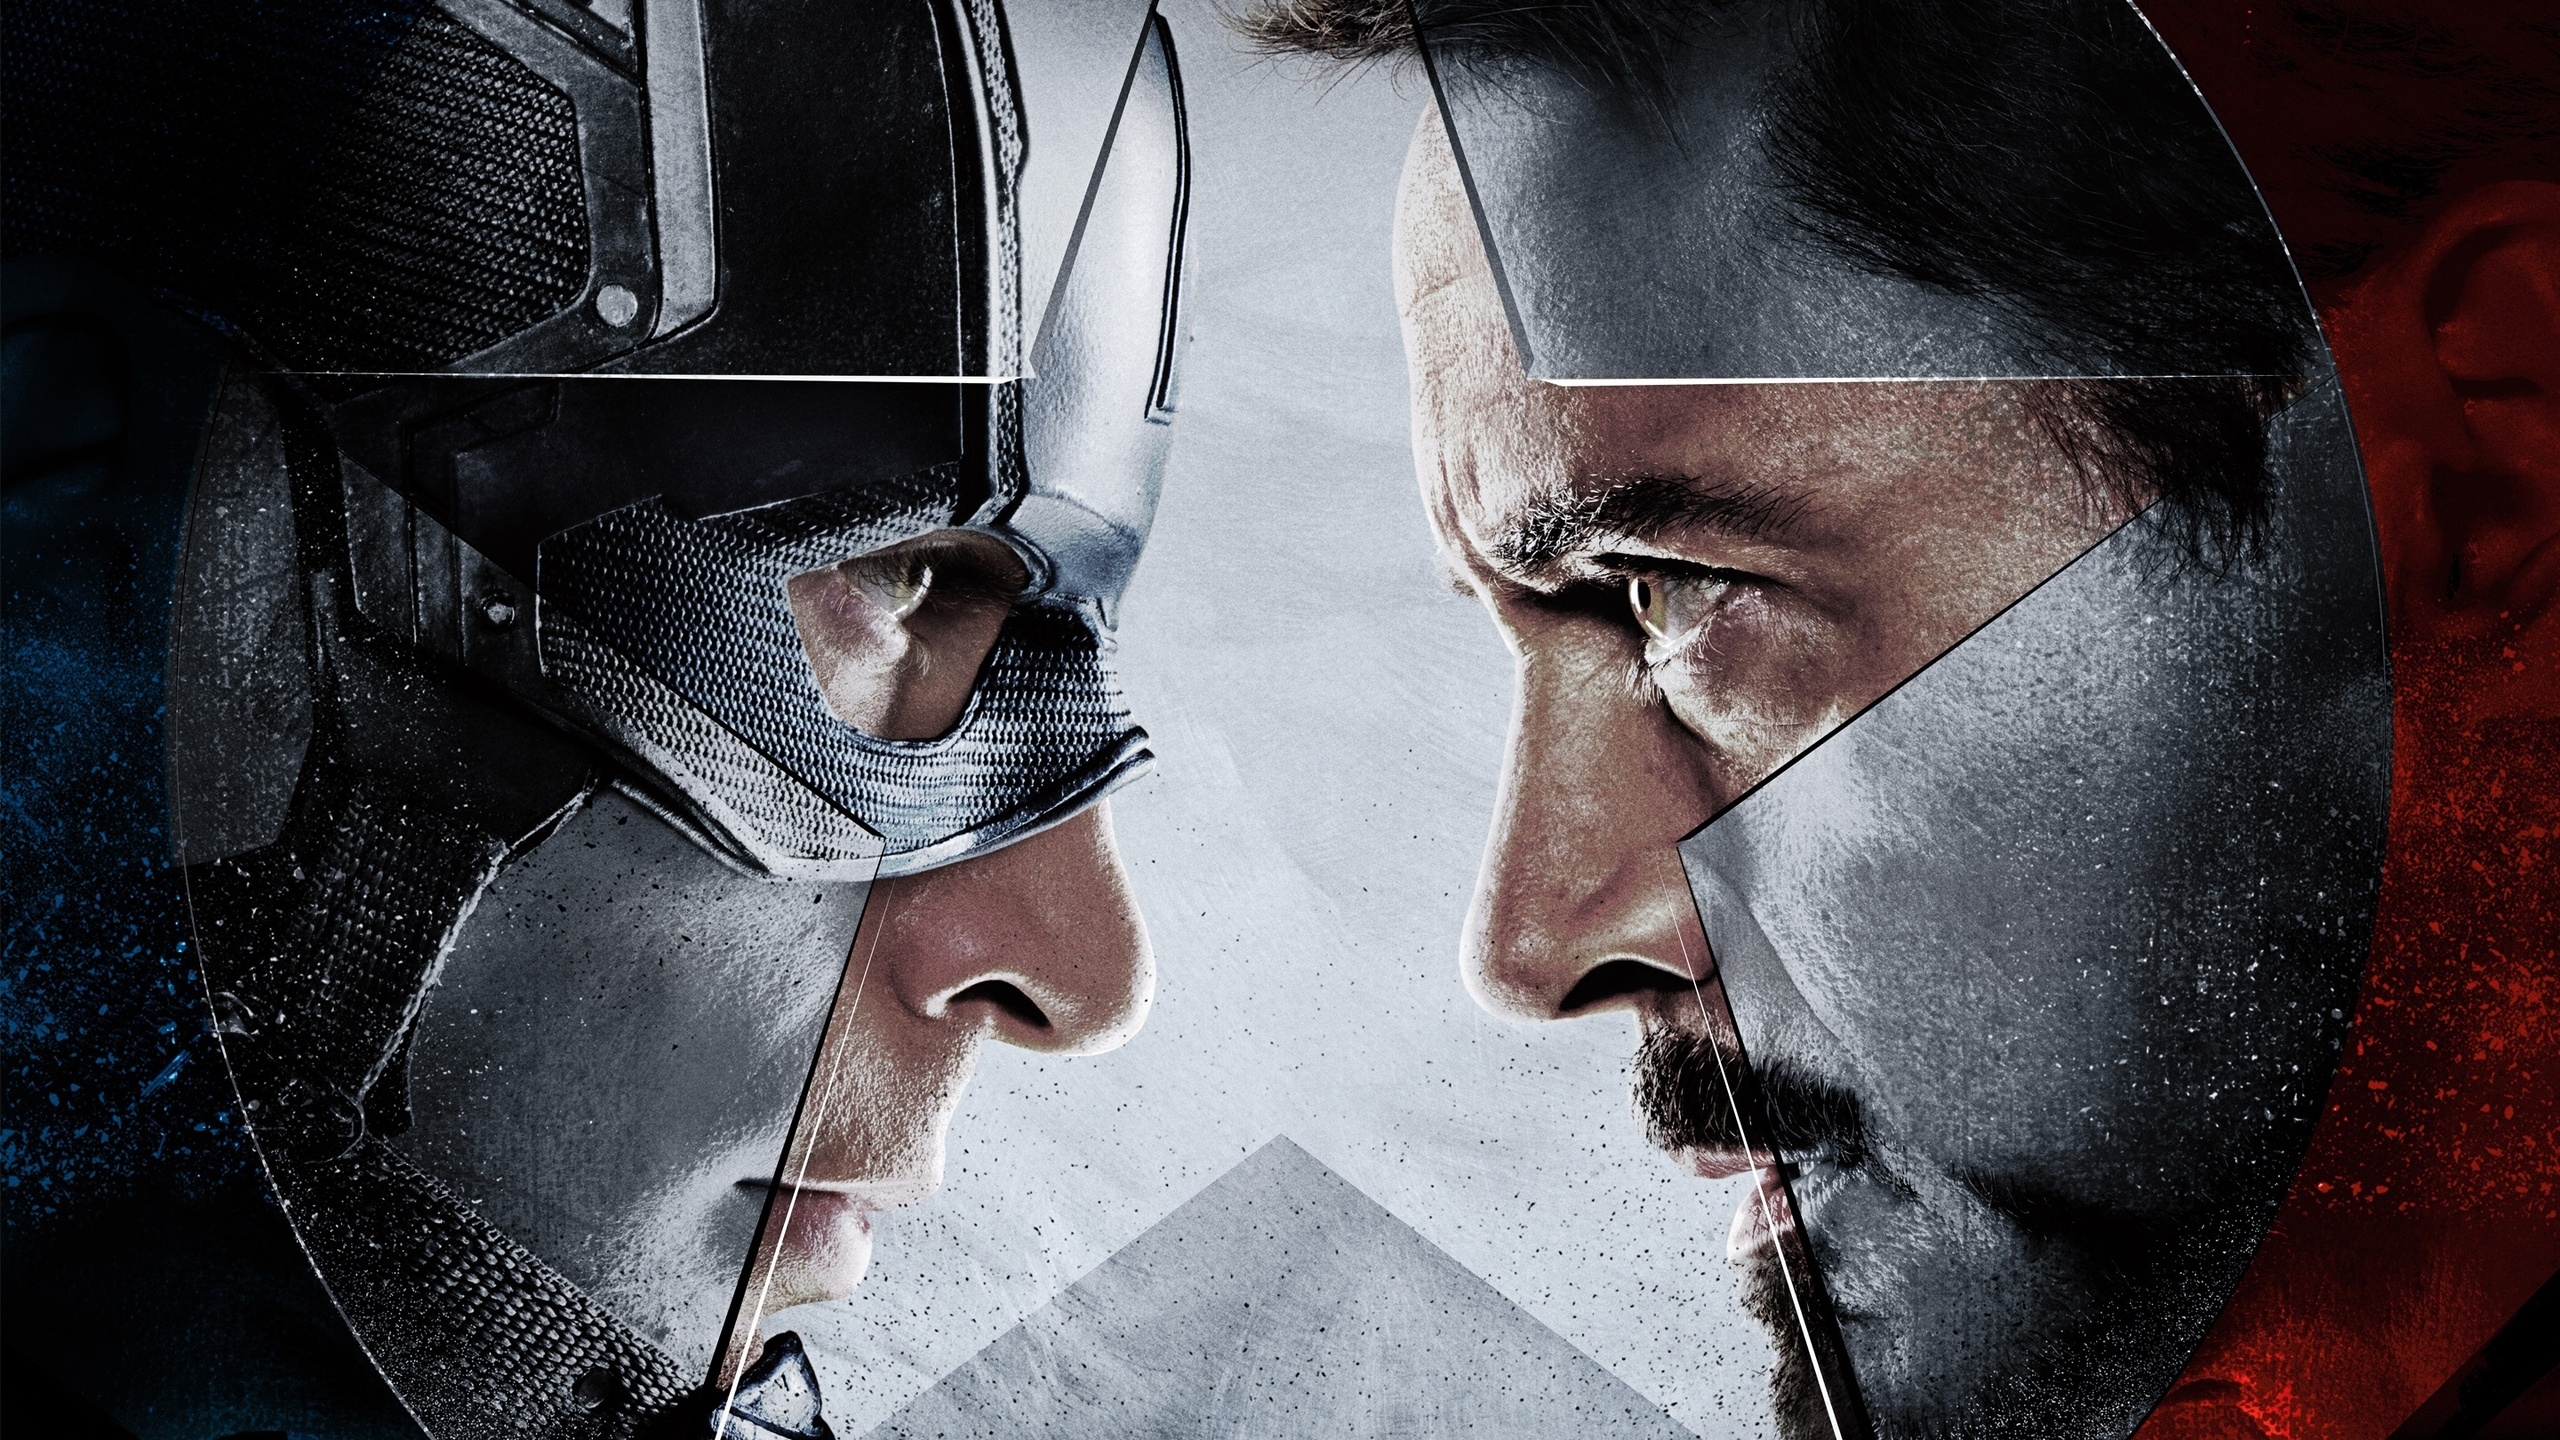 Captain America vs Iron Man  for 2560x1440 HDTV resolution